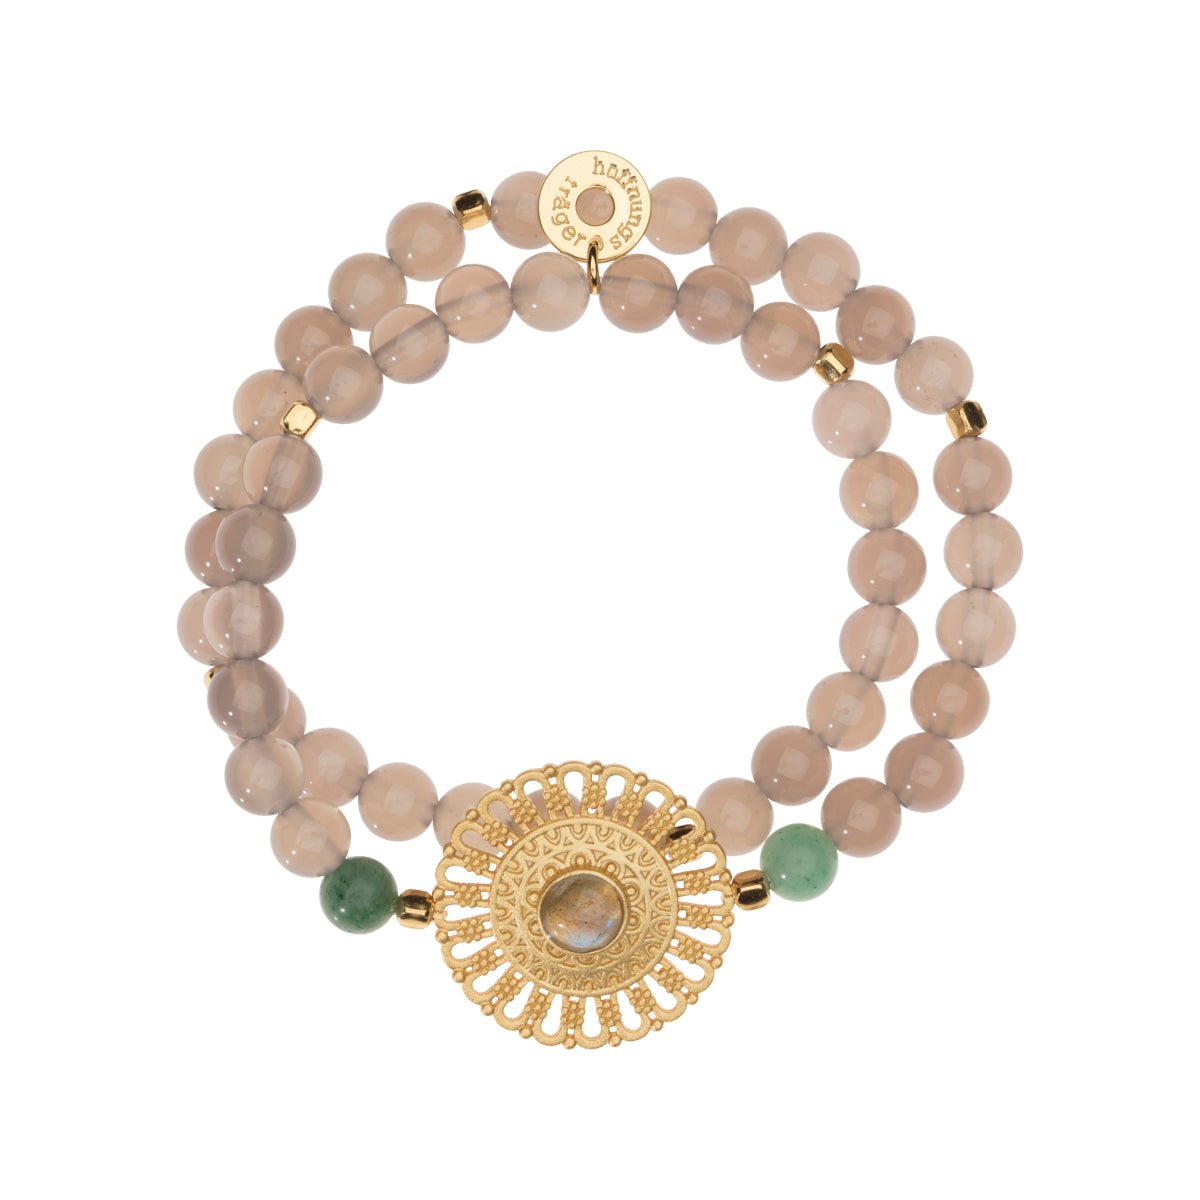 Doppelreihiges Edelstein Armband mit goldenem Mandala, Achat Perlen und Labradorit Heilstein.